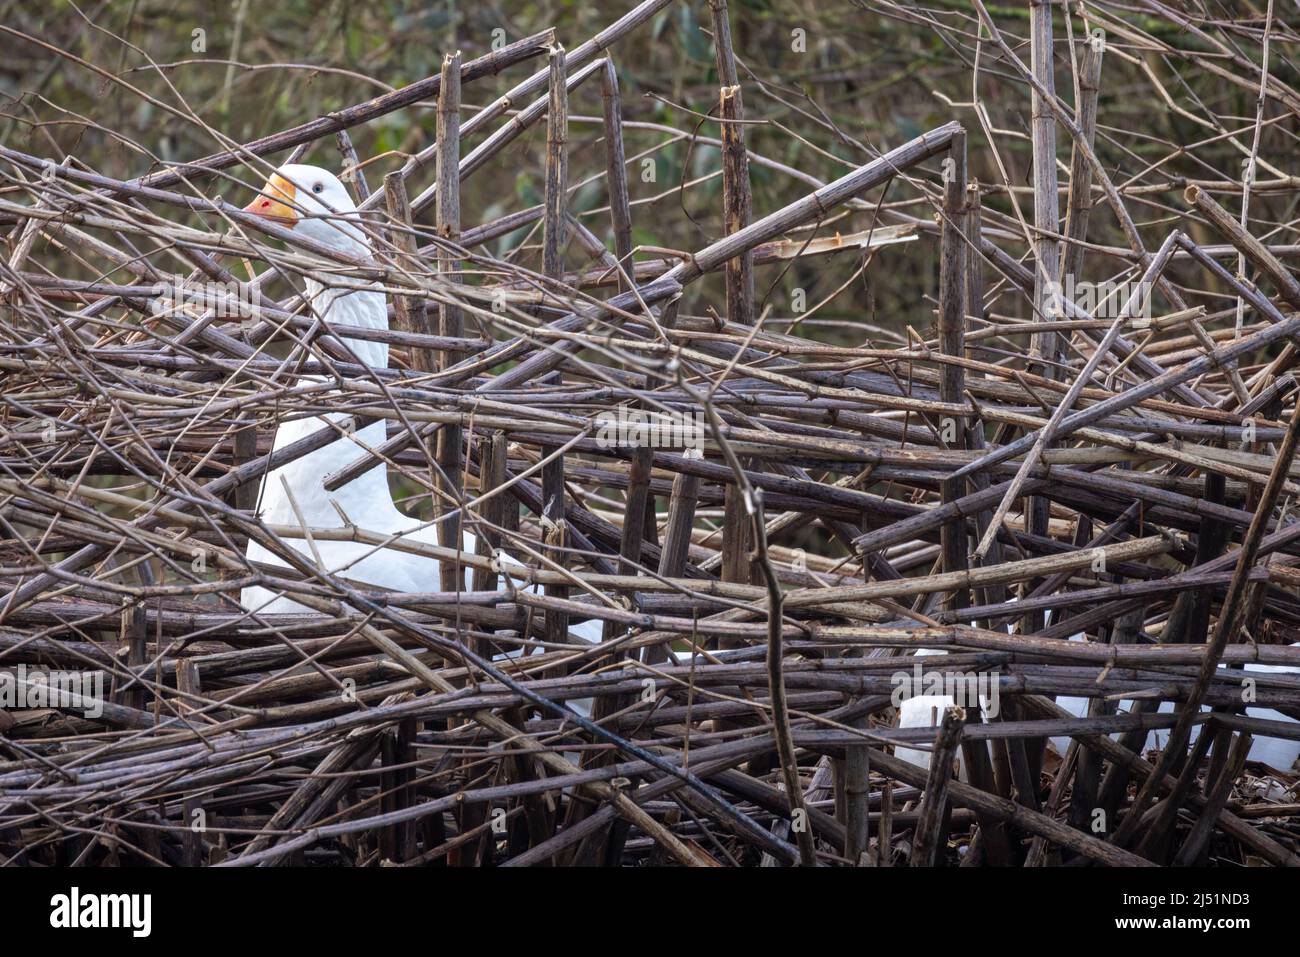 Oie blanche, anser, assise sur le sol, oeufs d'incubation dans son nid. Oiseau de ferme d'espèces de sauvagine. Photo de haute qualité Banque D'Images